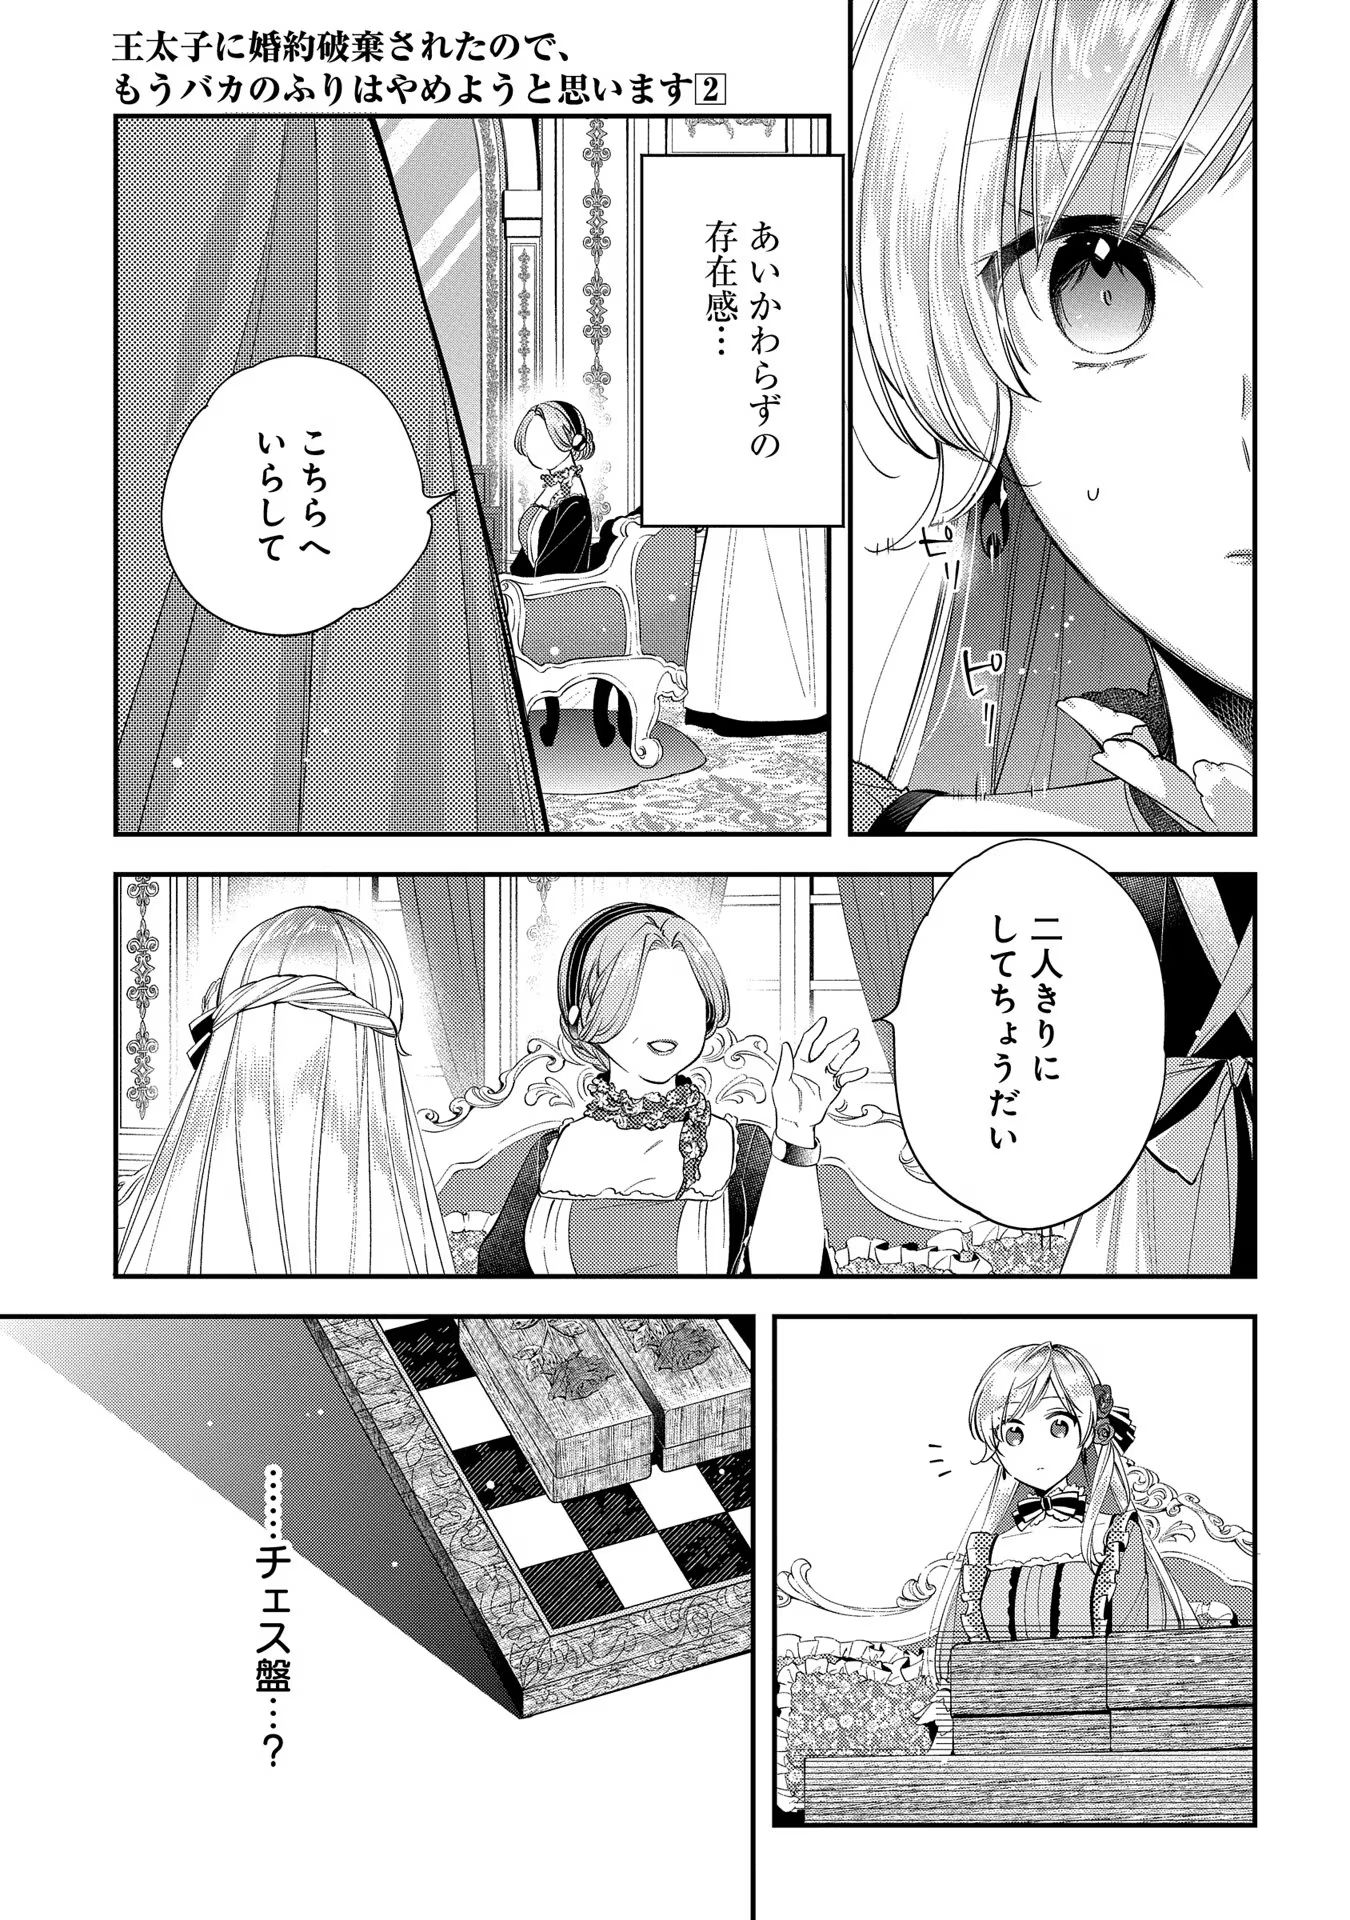 Outaishi ni Konyaku Hakisareta no de, Mou Baka no Furi wa Yameyou to Omoimasu - Chapter 6 - Page 16